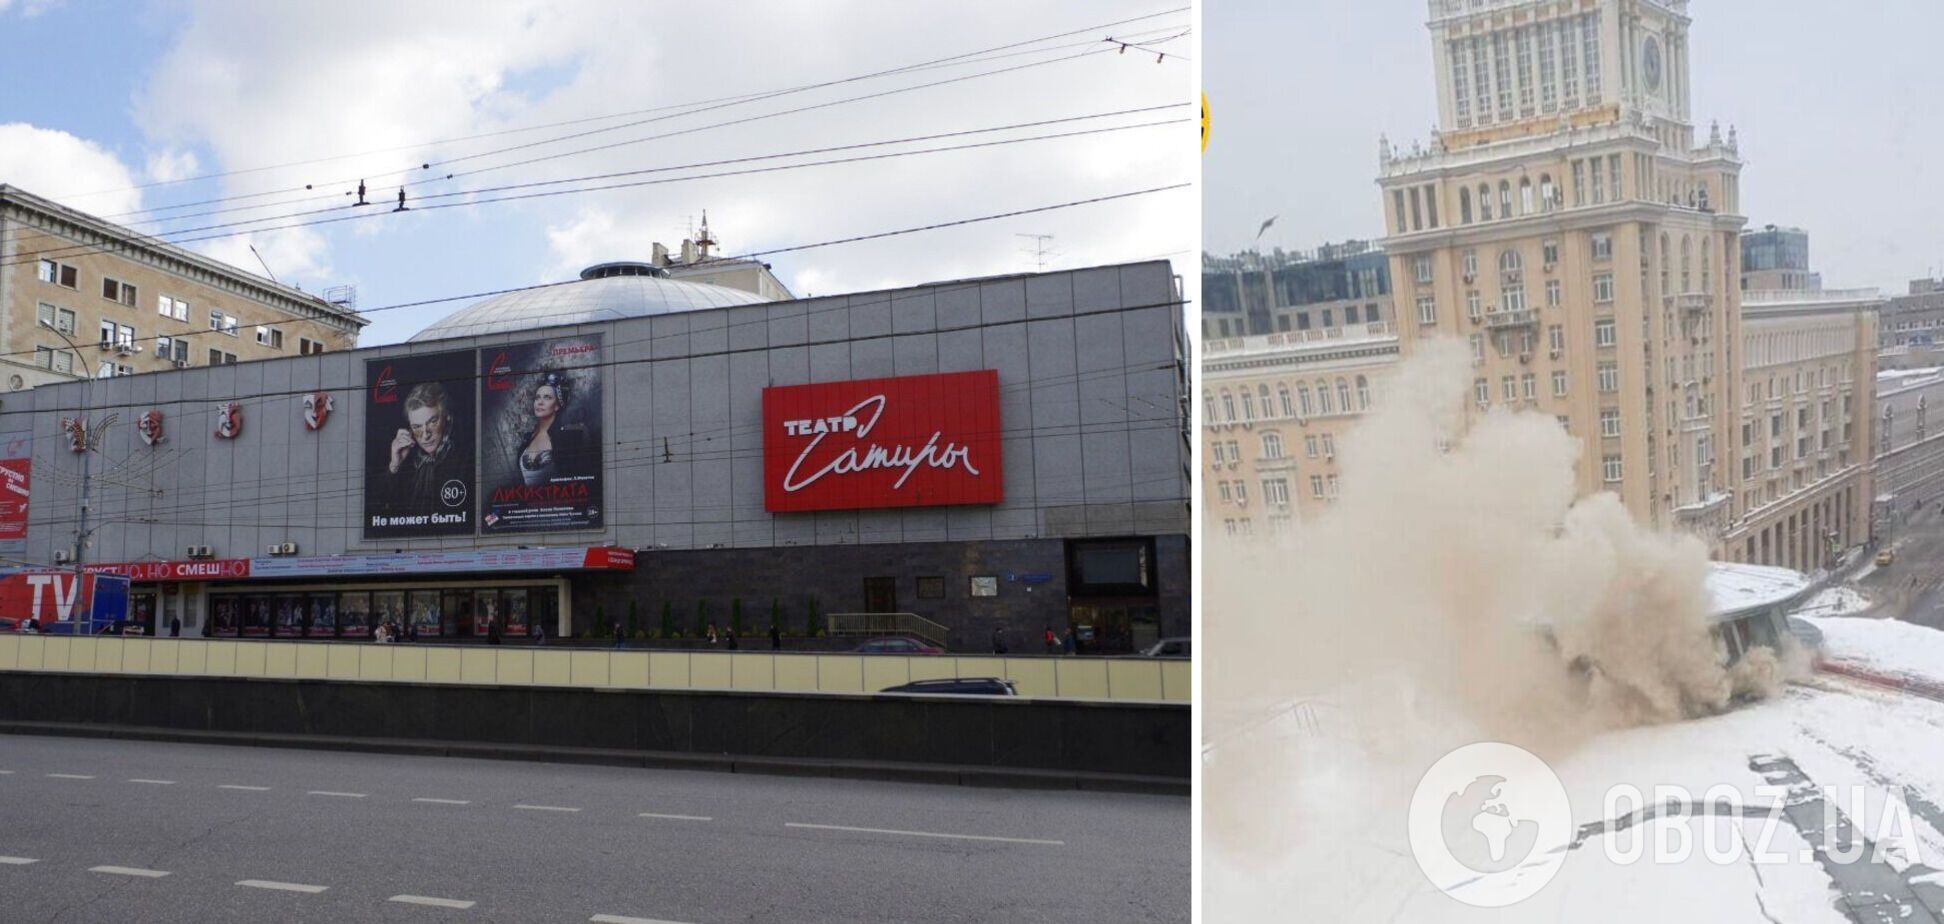 В центре Москвы загорелся Театр сатиры: фото и видео с места пожара